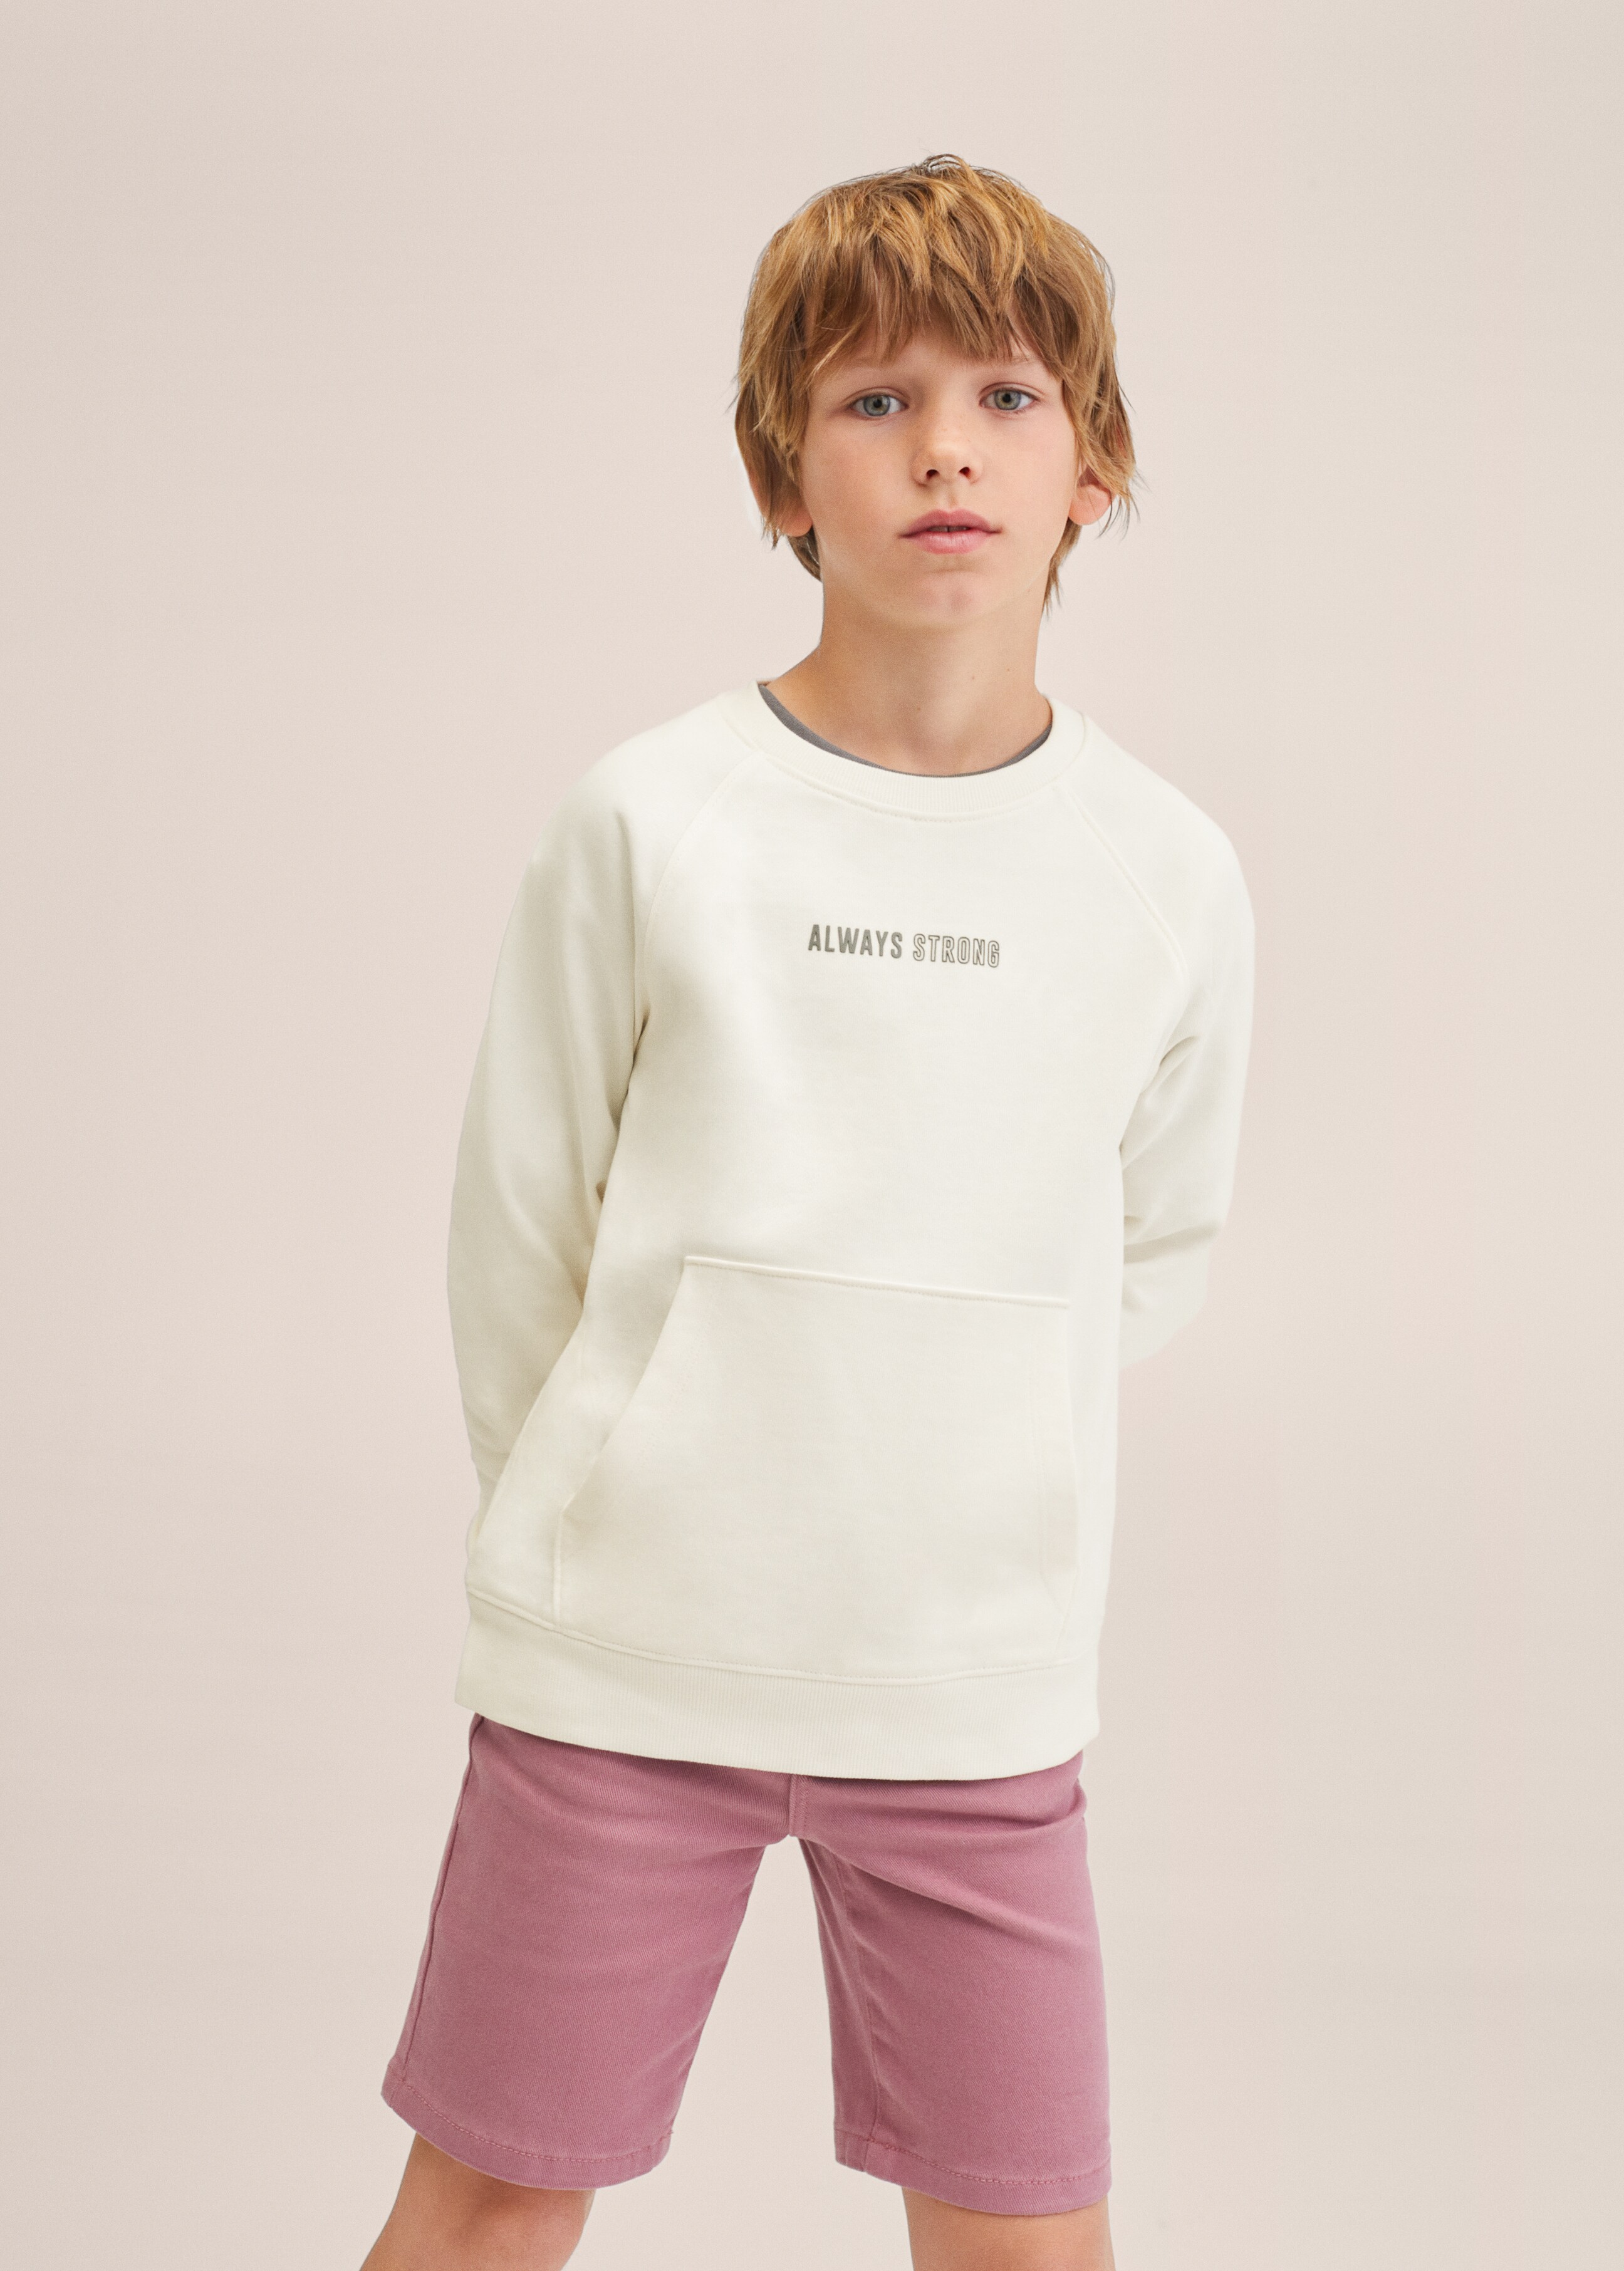 Sweater coton message - Plan moyen